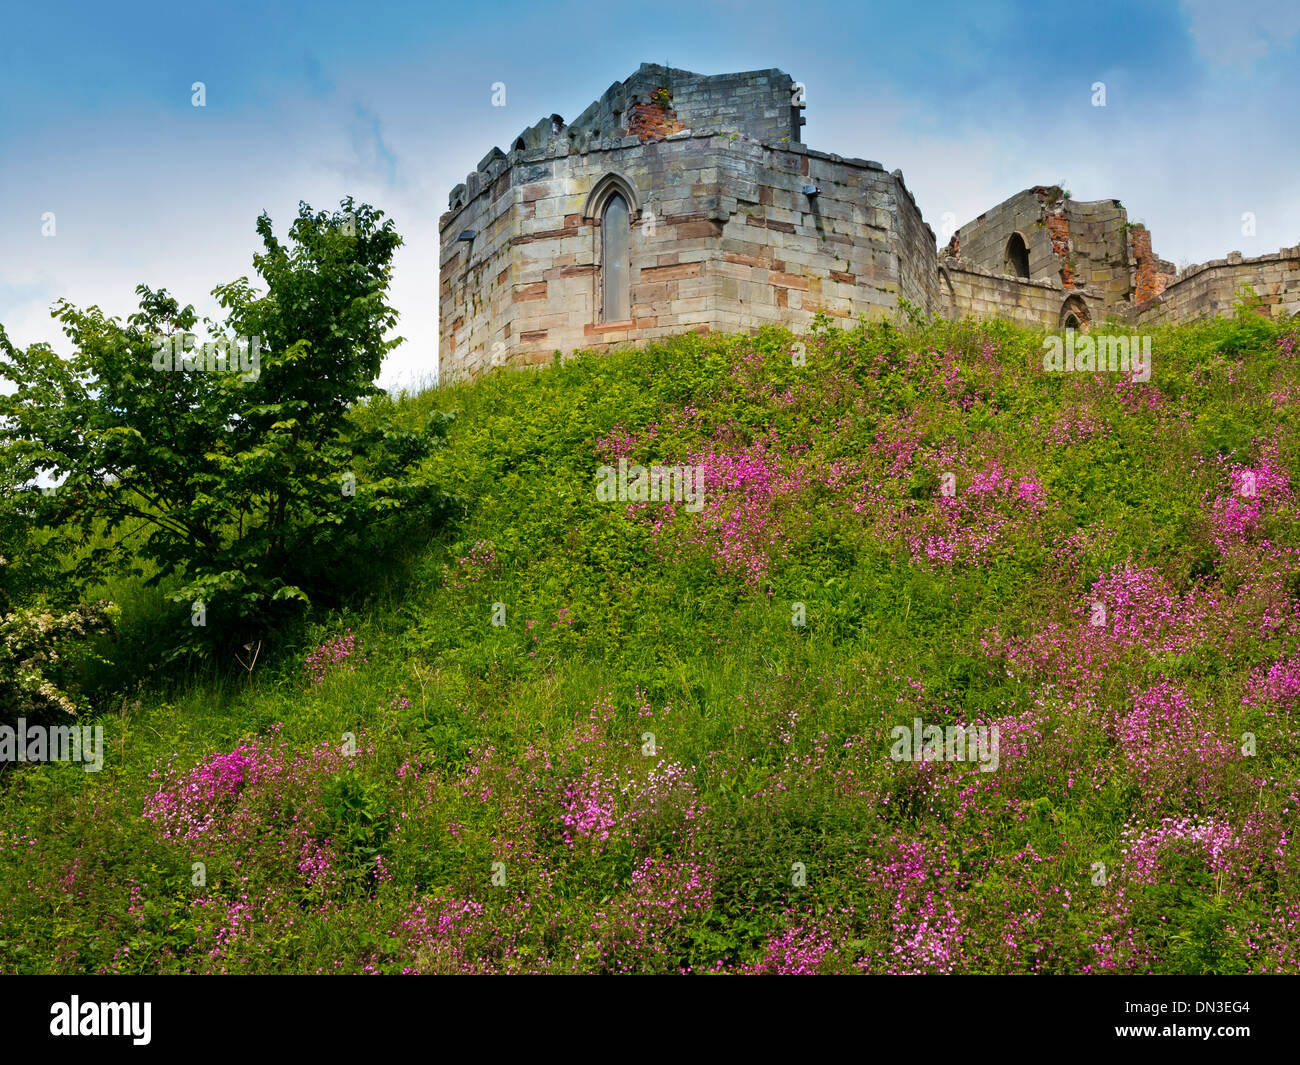 Les ruines de château de Stafford Staffordshire England UK un donjon de pierre néo-gothique construite sur les fondations médiévales d'origine Banque D'Images